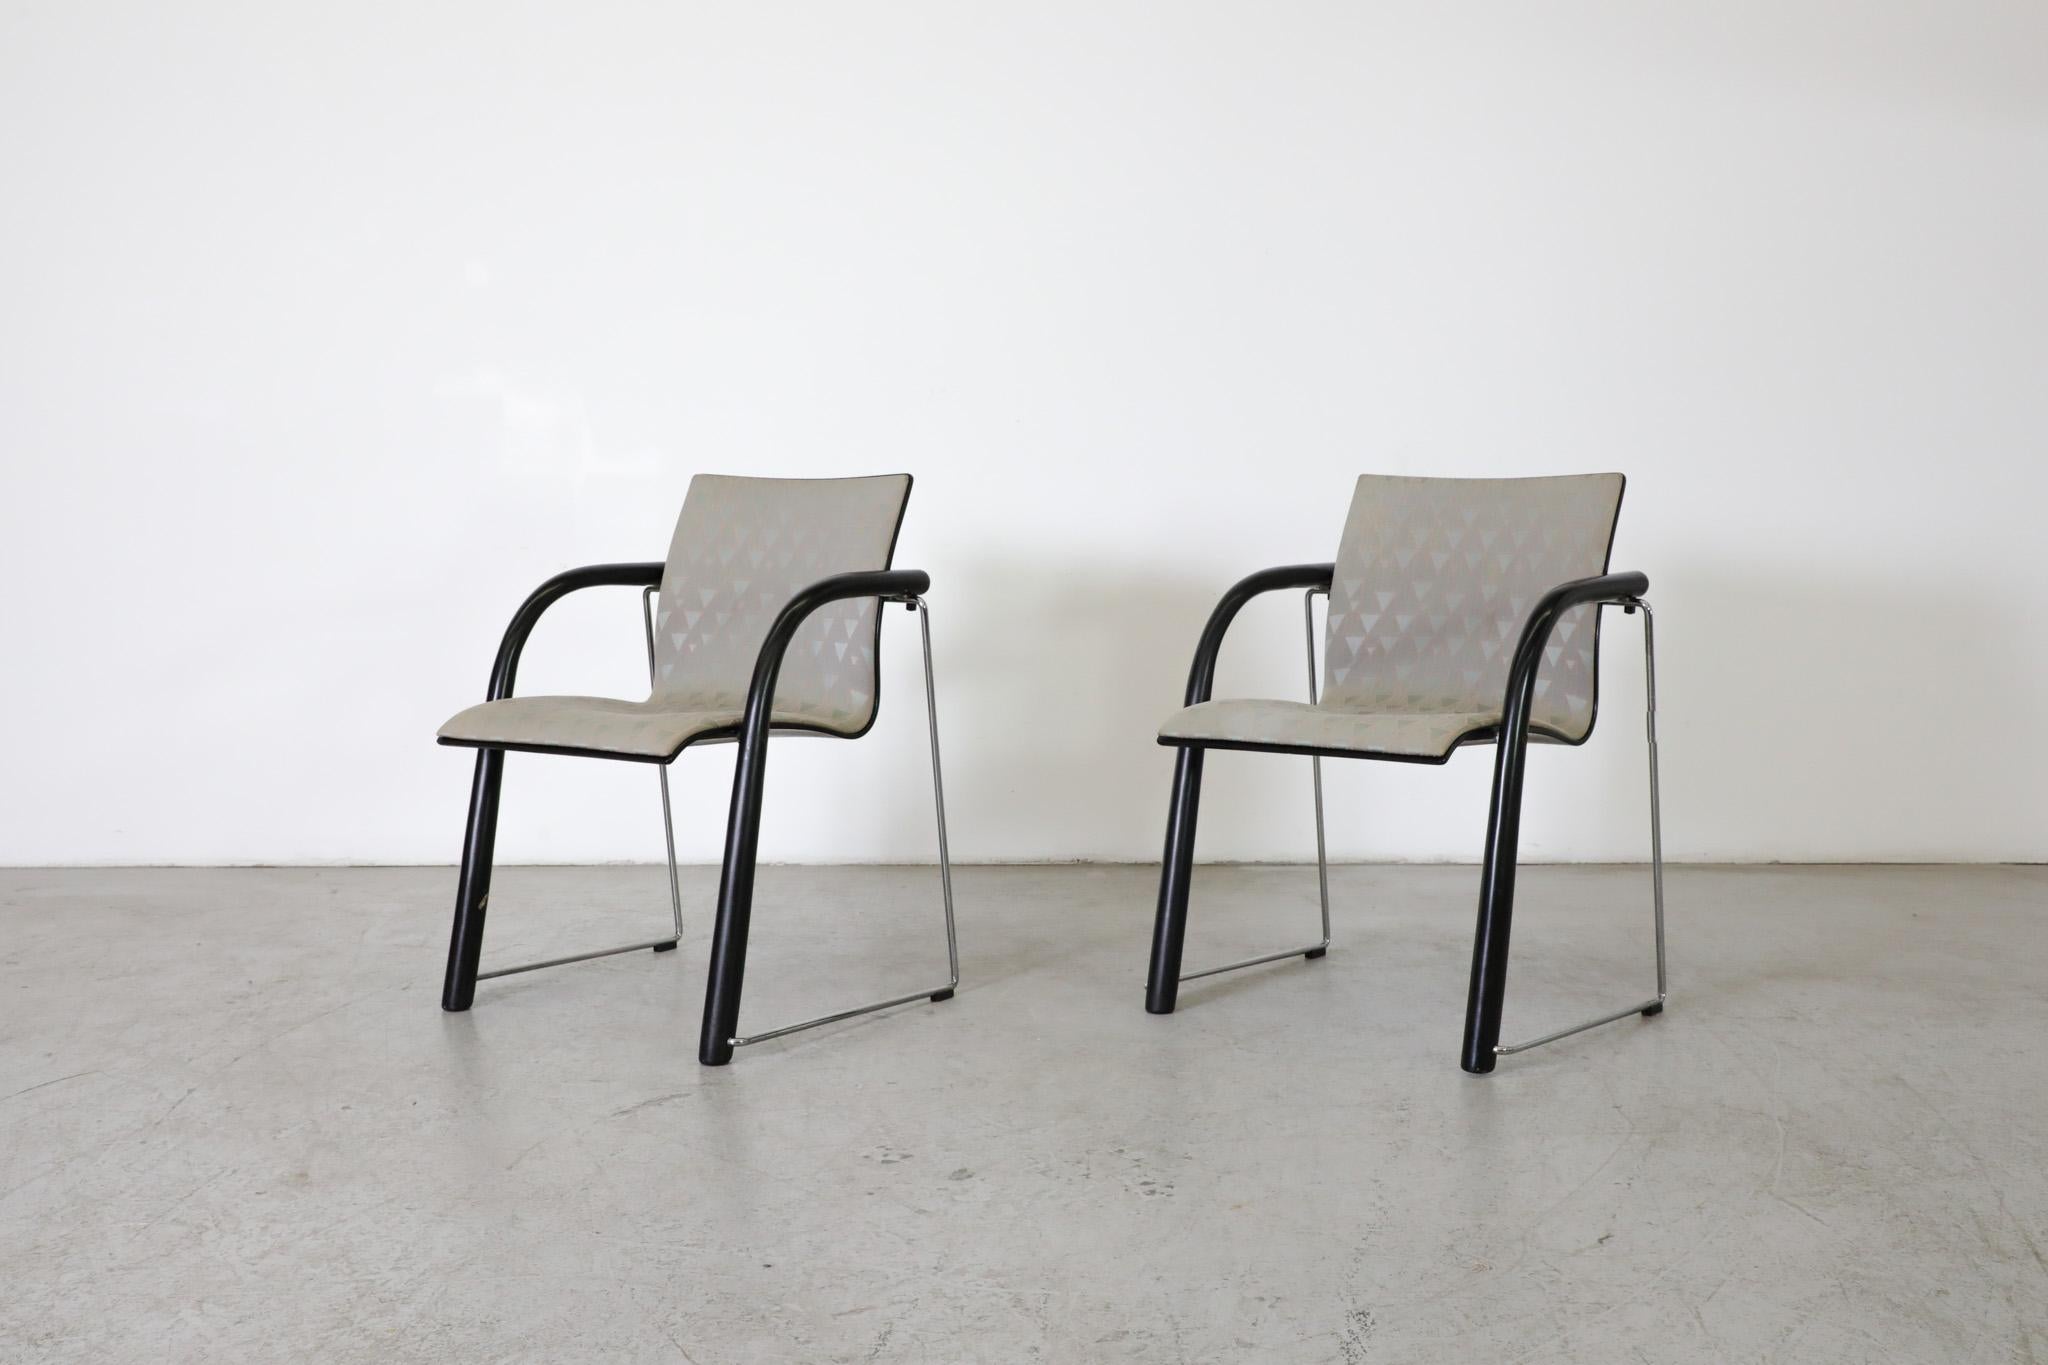 Les designers Ulrich Böhme et Wulf Schneider ont créé le S320 en 1984 pour le fabricant emblématique Thonet. La chaise a un design intemporel, est empilable, très robuste et extrêmement confortable grâce à la coque d'assise façonnée et ergonomique.